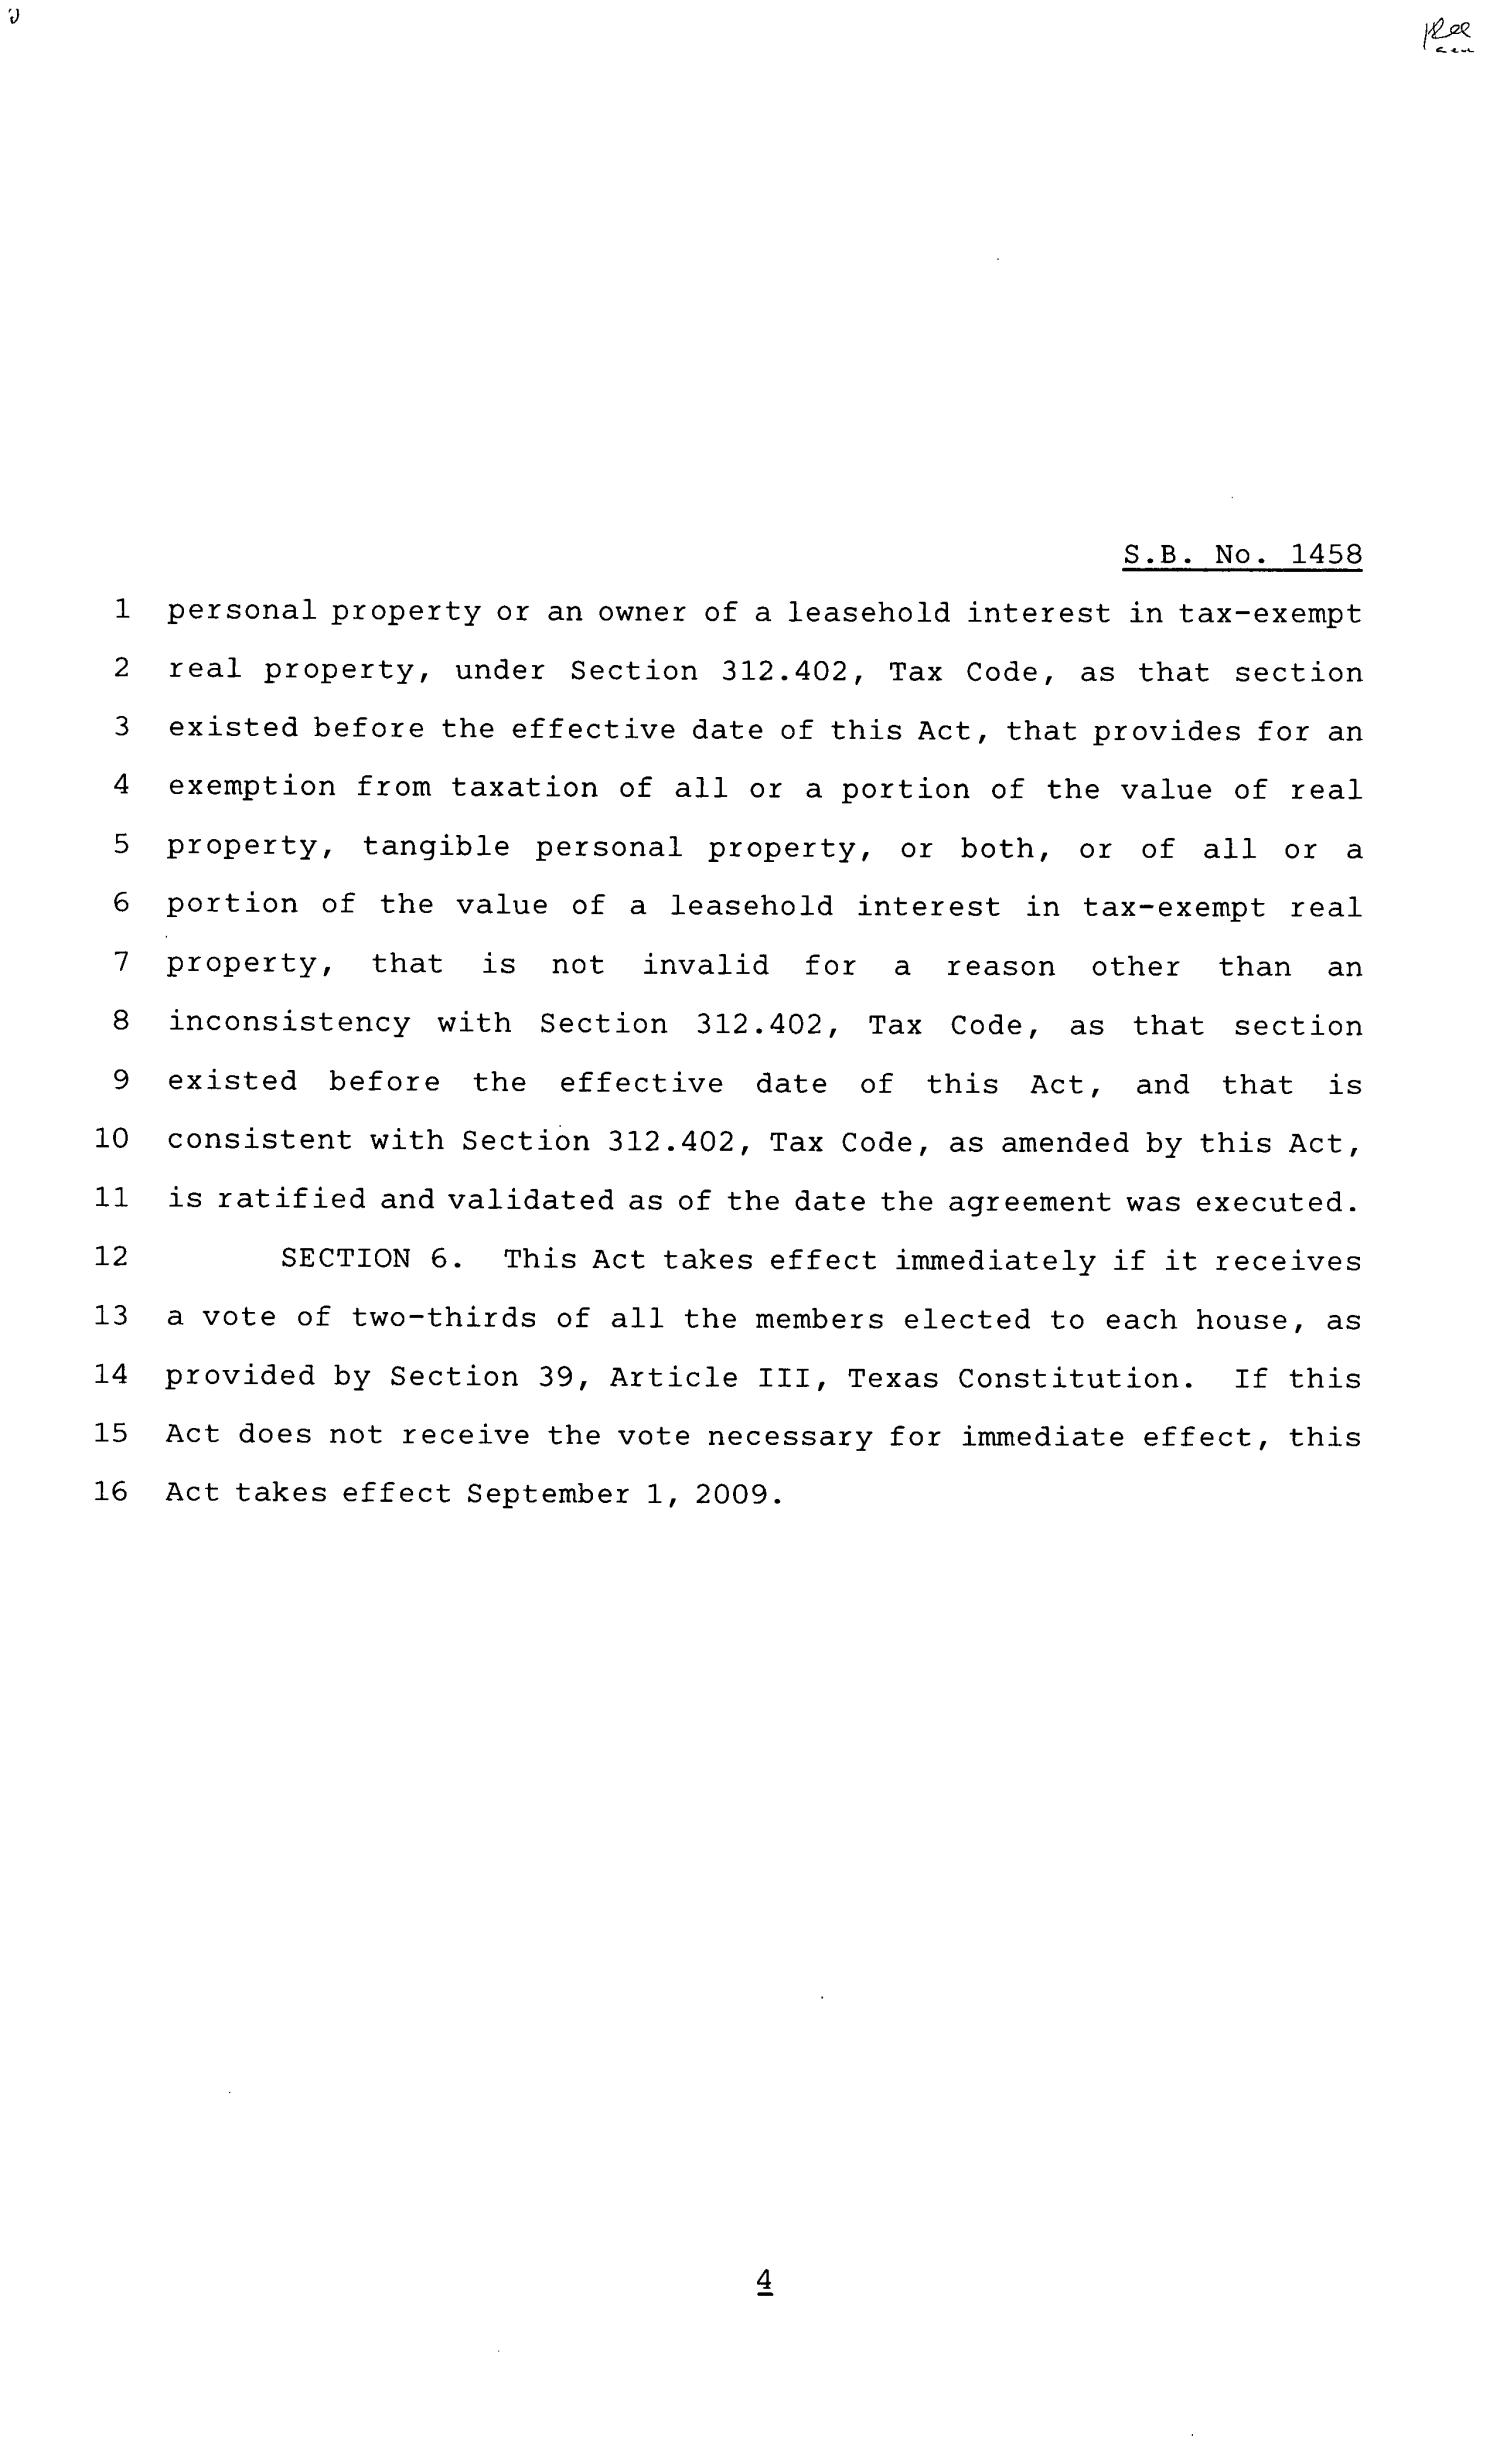 81st Texas Legislature, Senate Bill 1458, Chapter 1225
                                                
                                                    [Sequence #]: 4 of 5
                                                